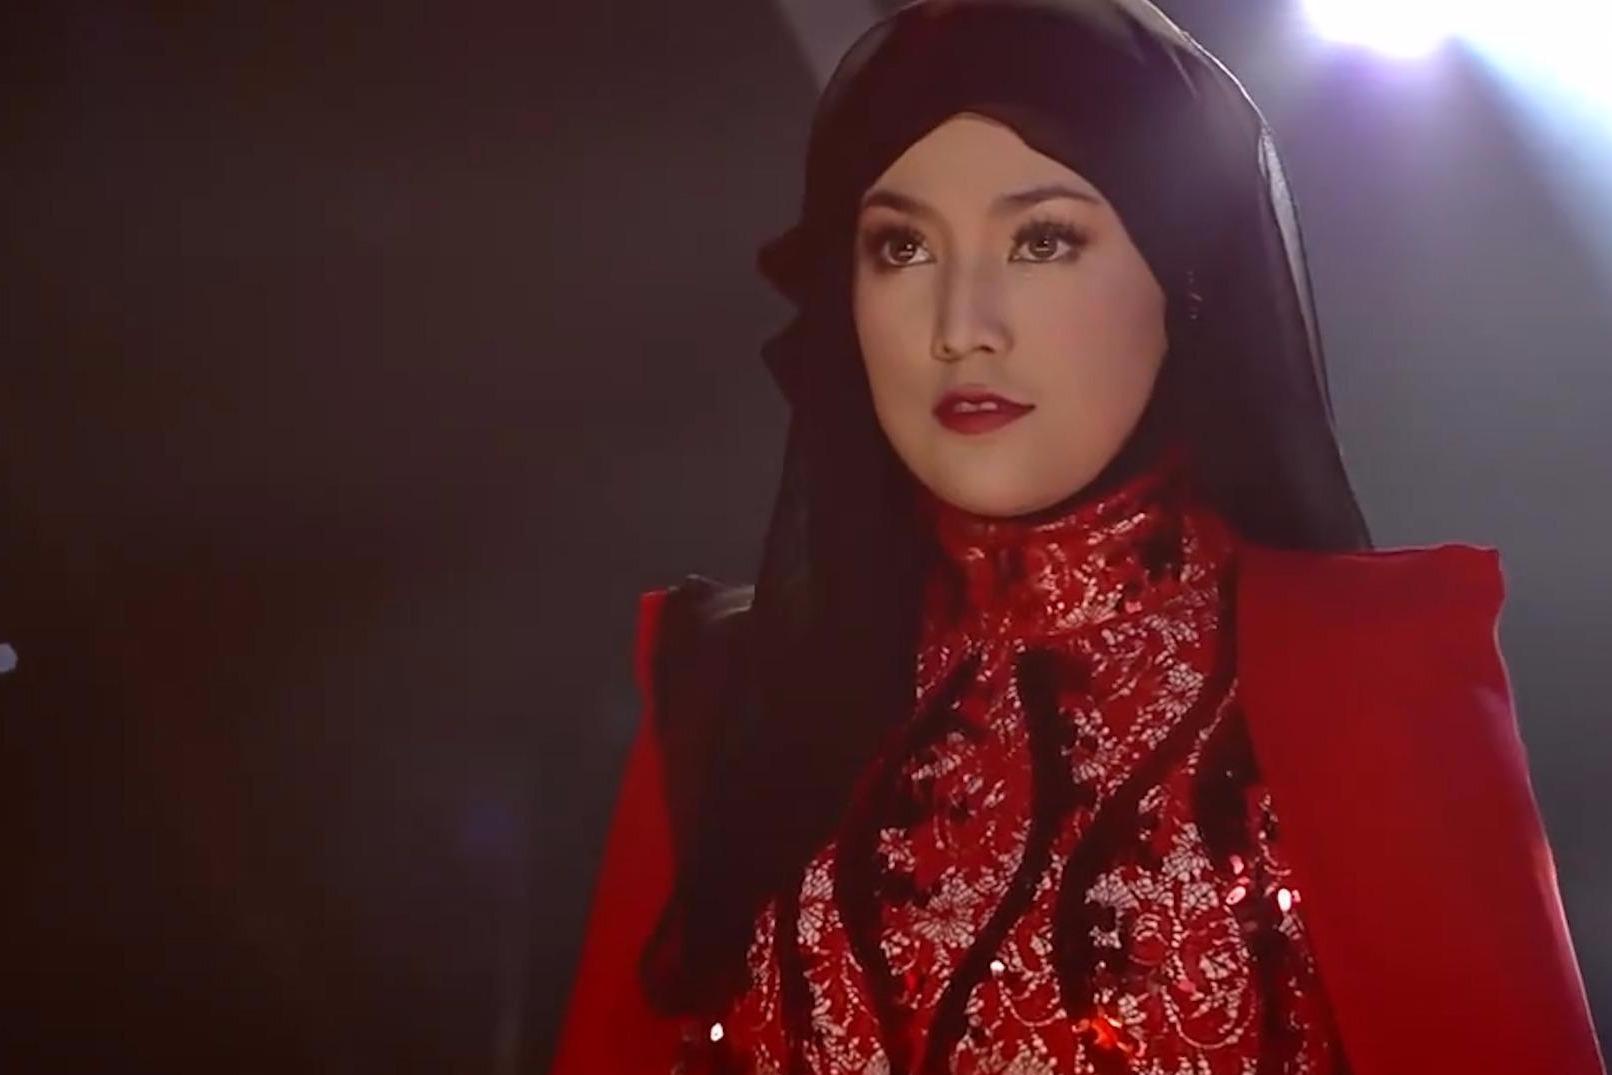 马来西亚女歌手茜拉翻唱《想你的夜》,改编的版本比原唱更有味道